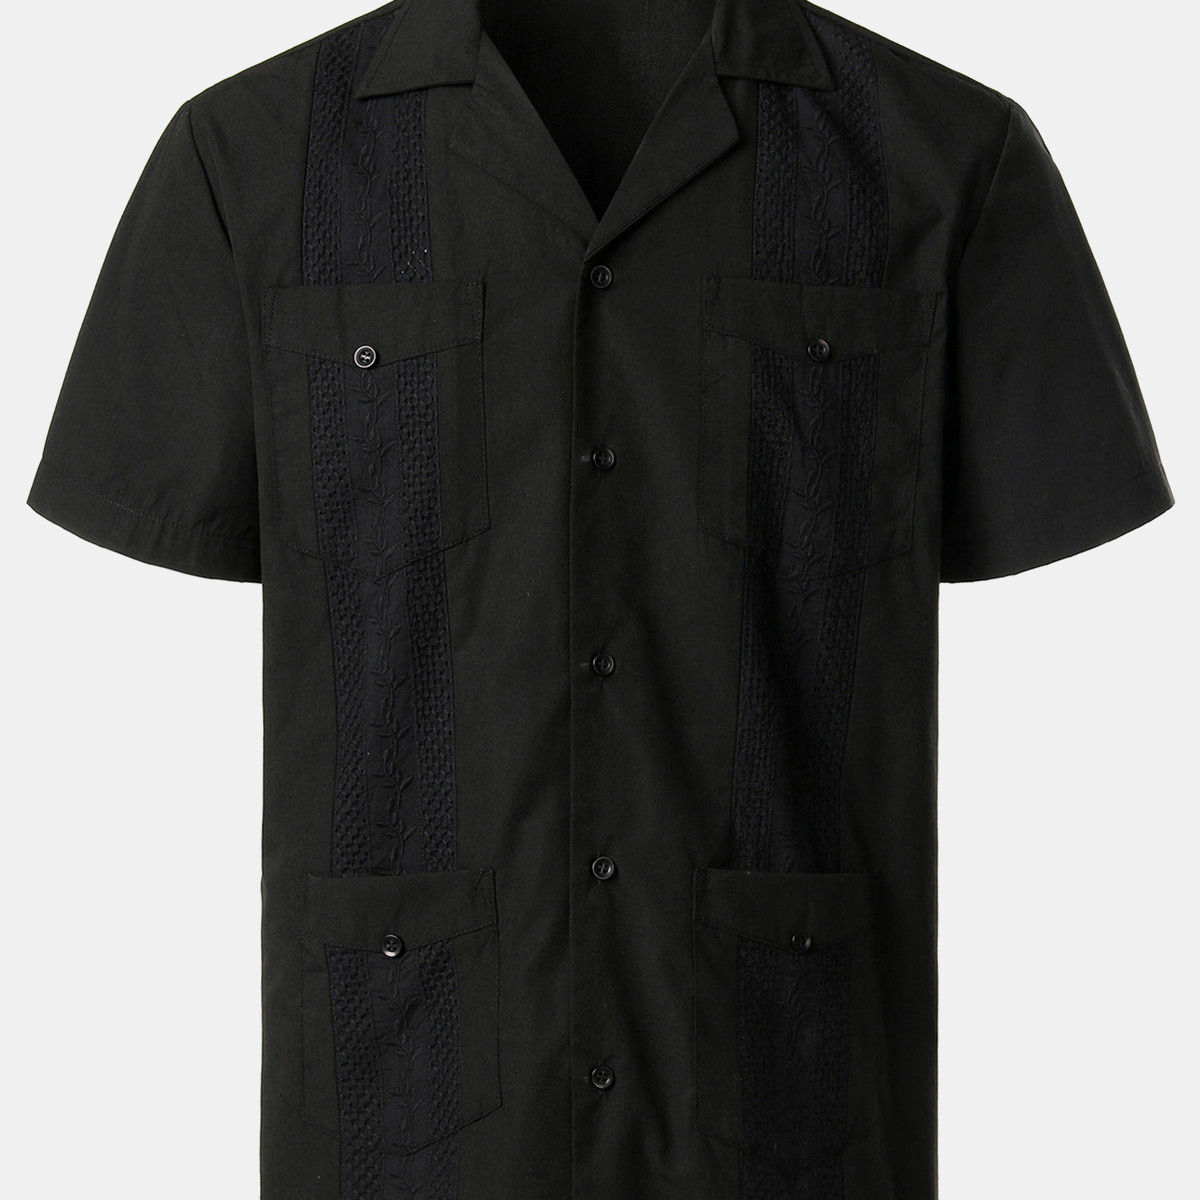 Men's Solid Color Cotton Short Sleeve Shirt